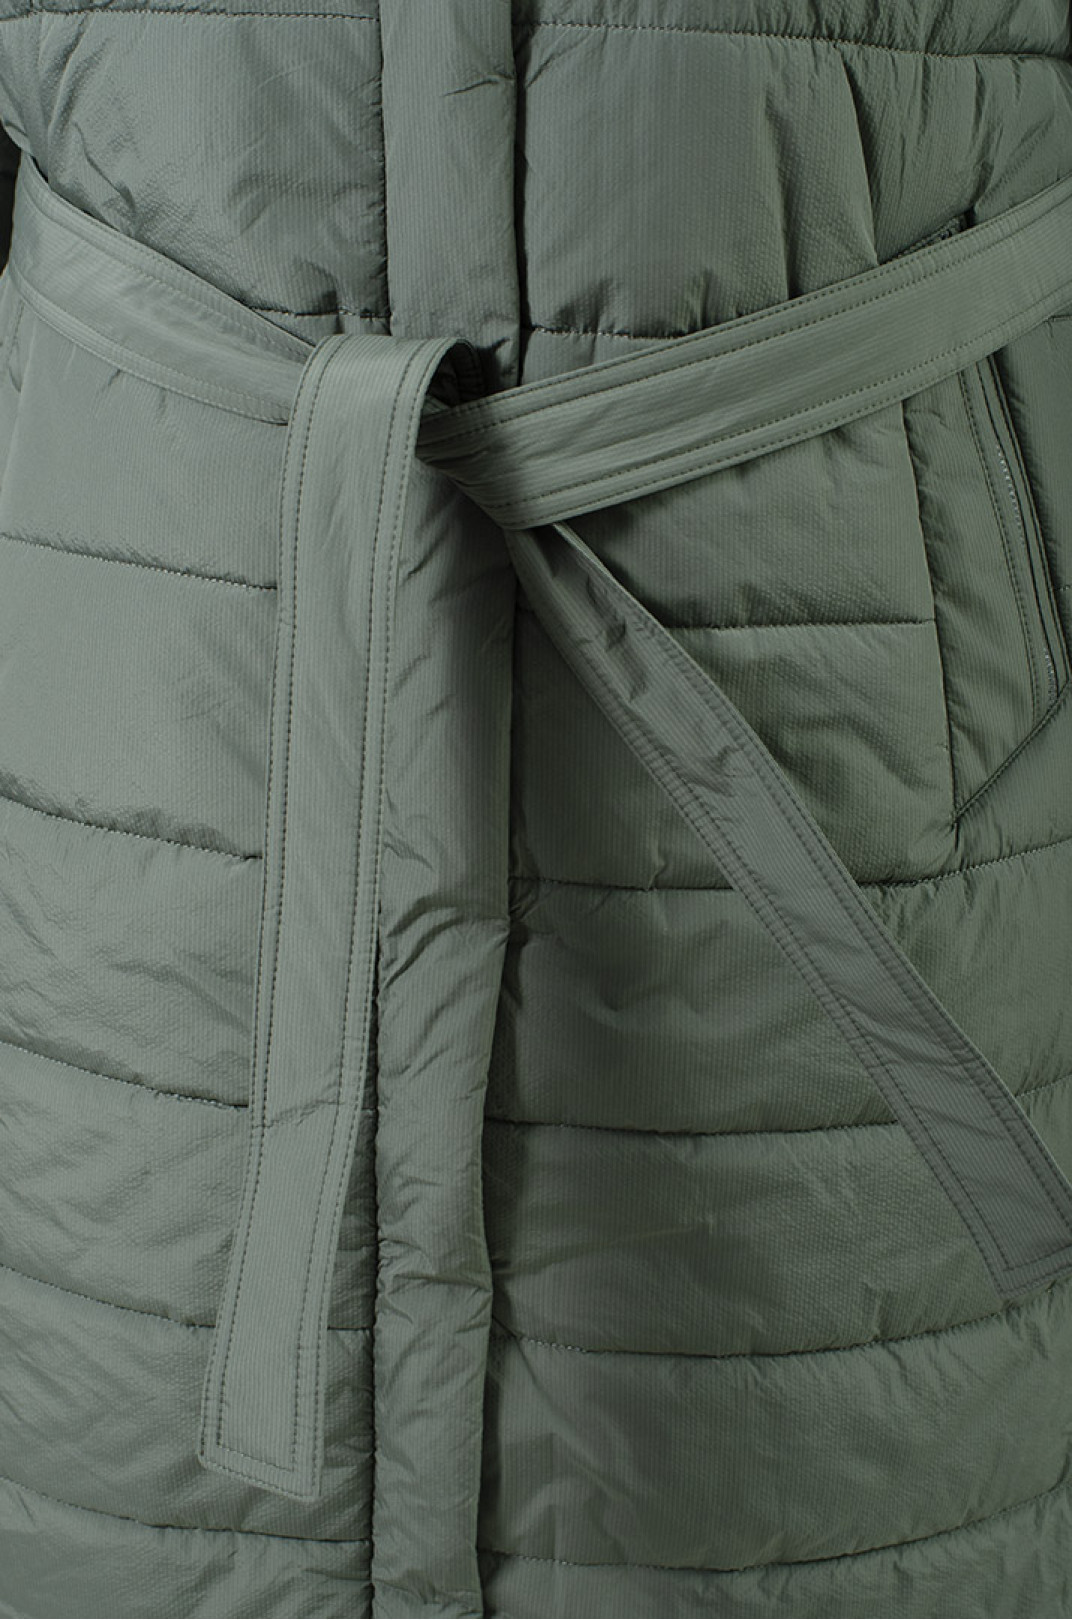 Теплое стеганное пальто синтепух с двойным капюшоном супер батал